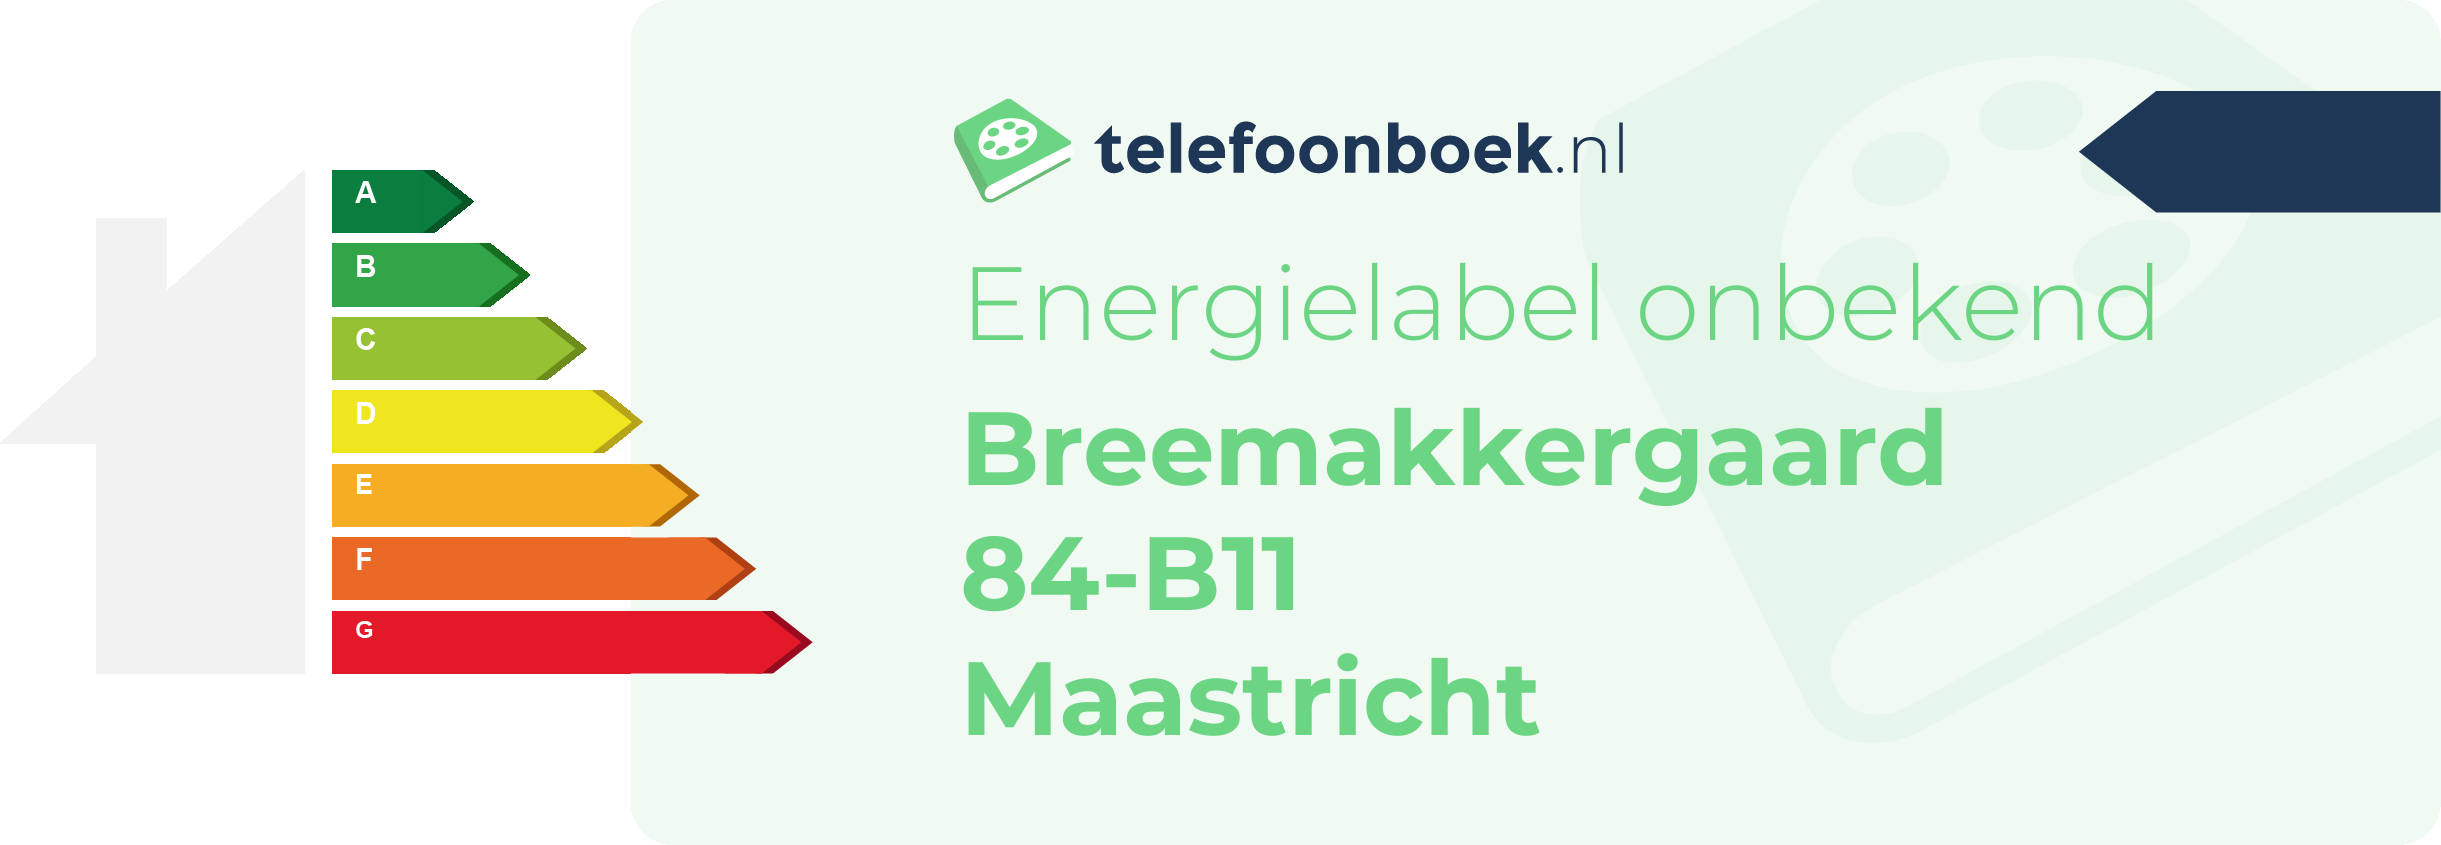 Energielabel Breemakkergaard 84-B11 Maastricht